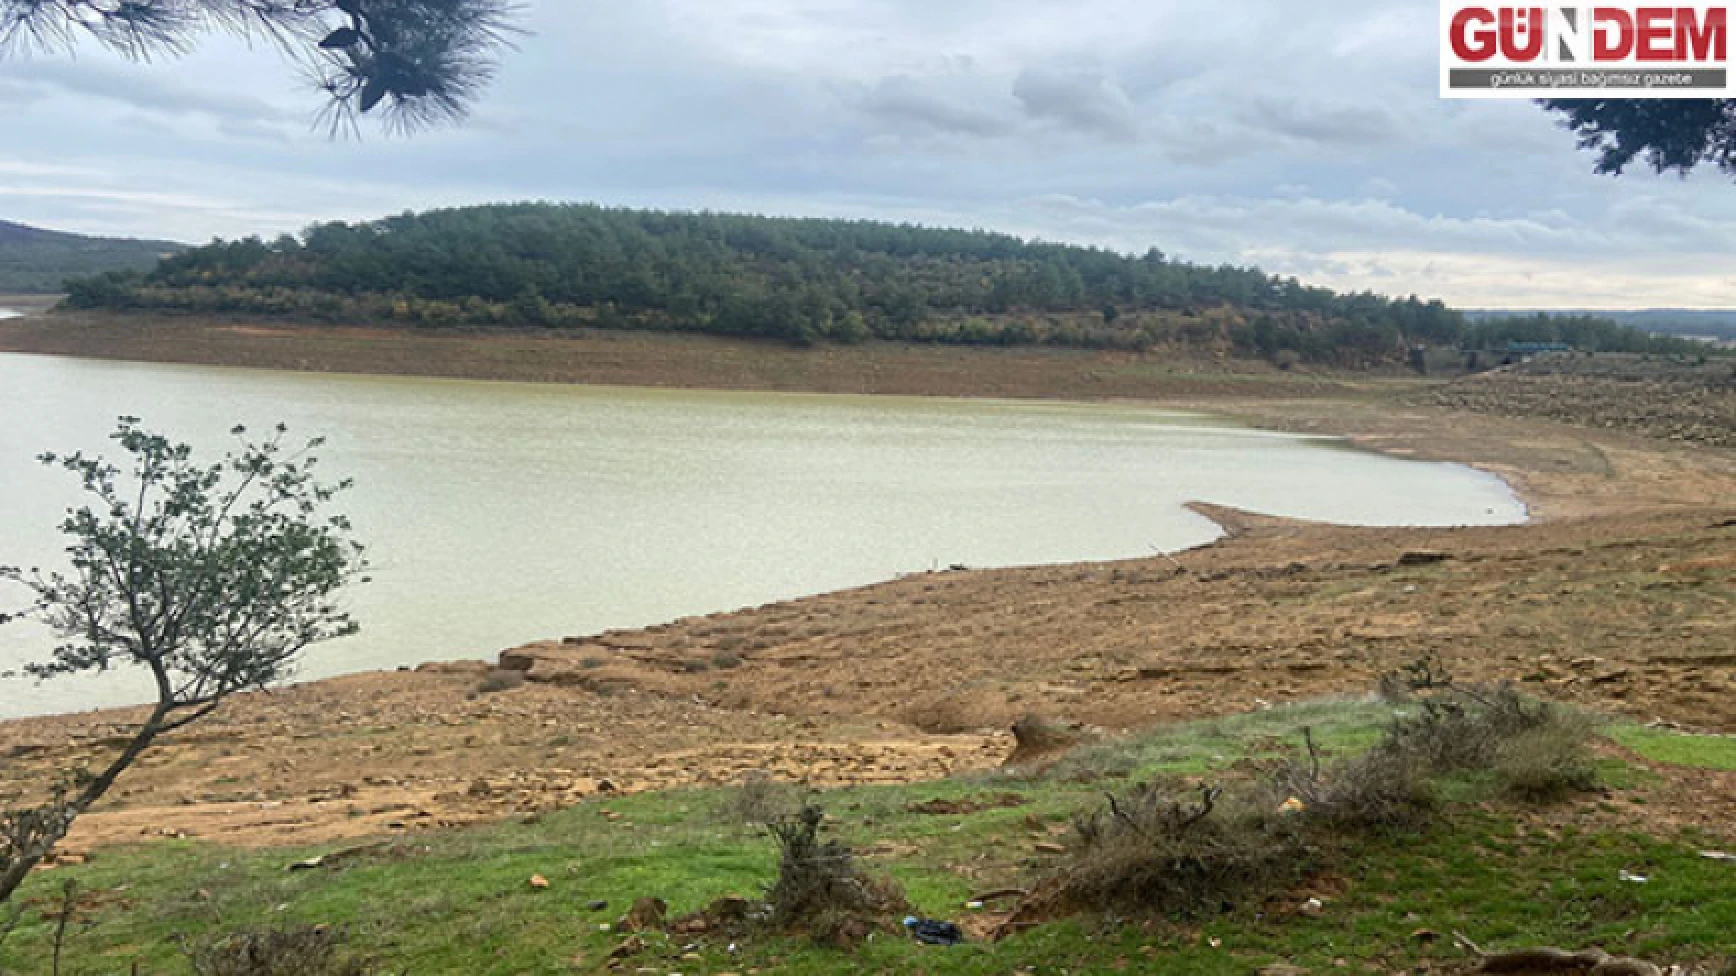 Son yağışların Kadıköy Barajı’na katkısı olmadı, alarm durumu devam ediyor